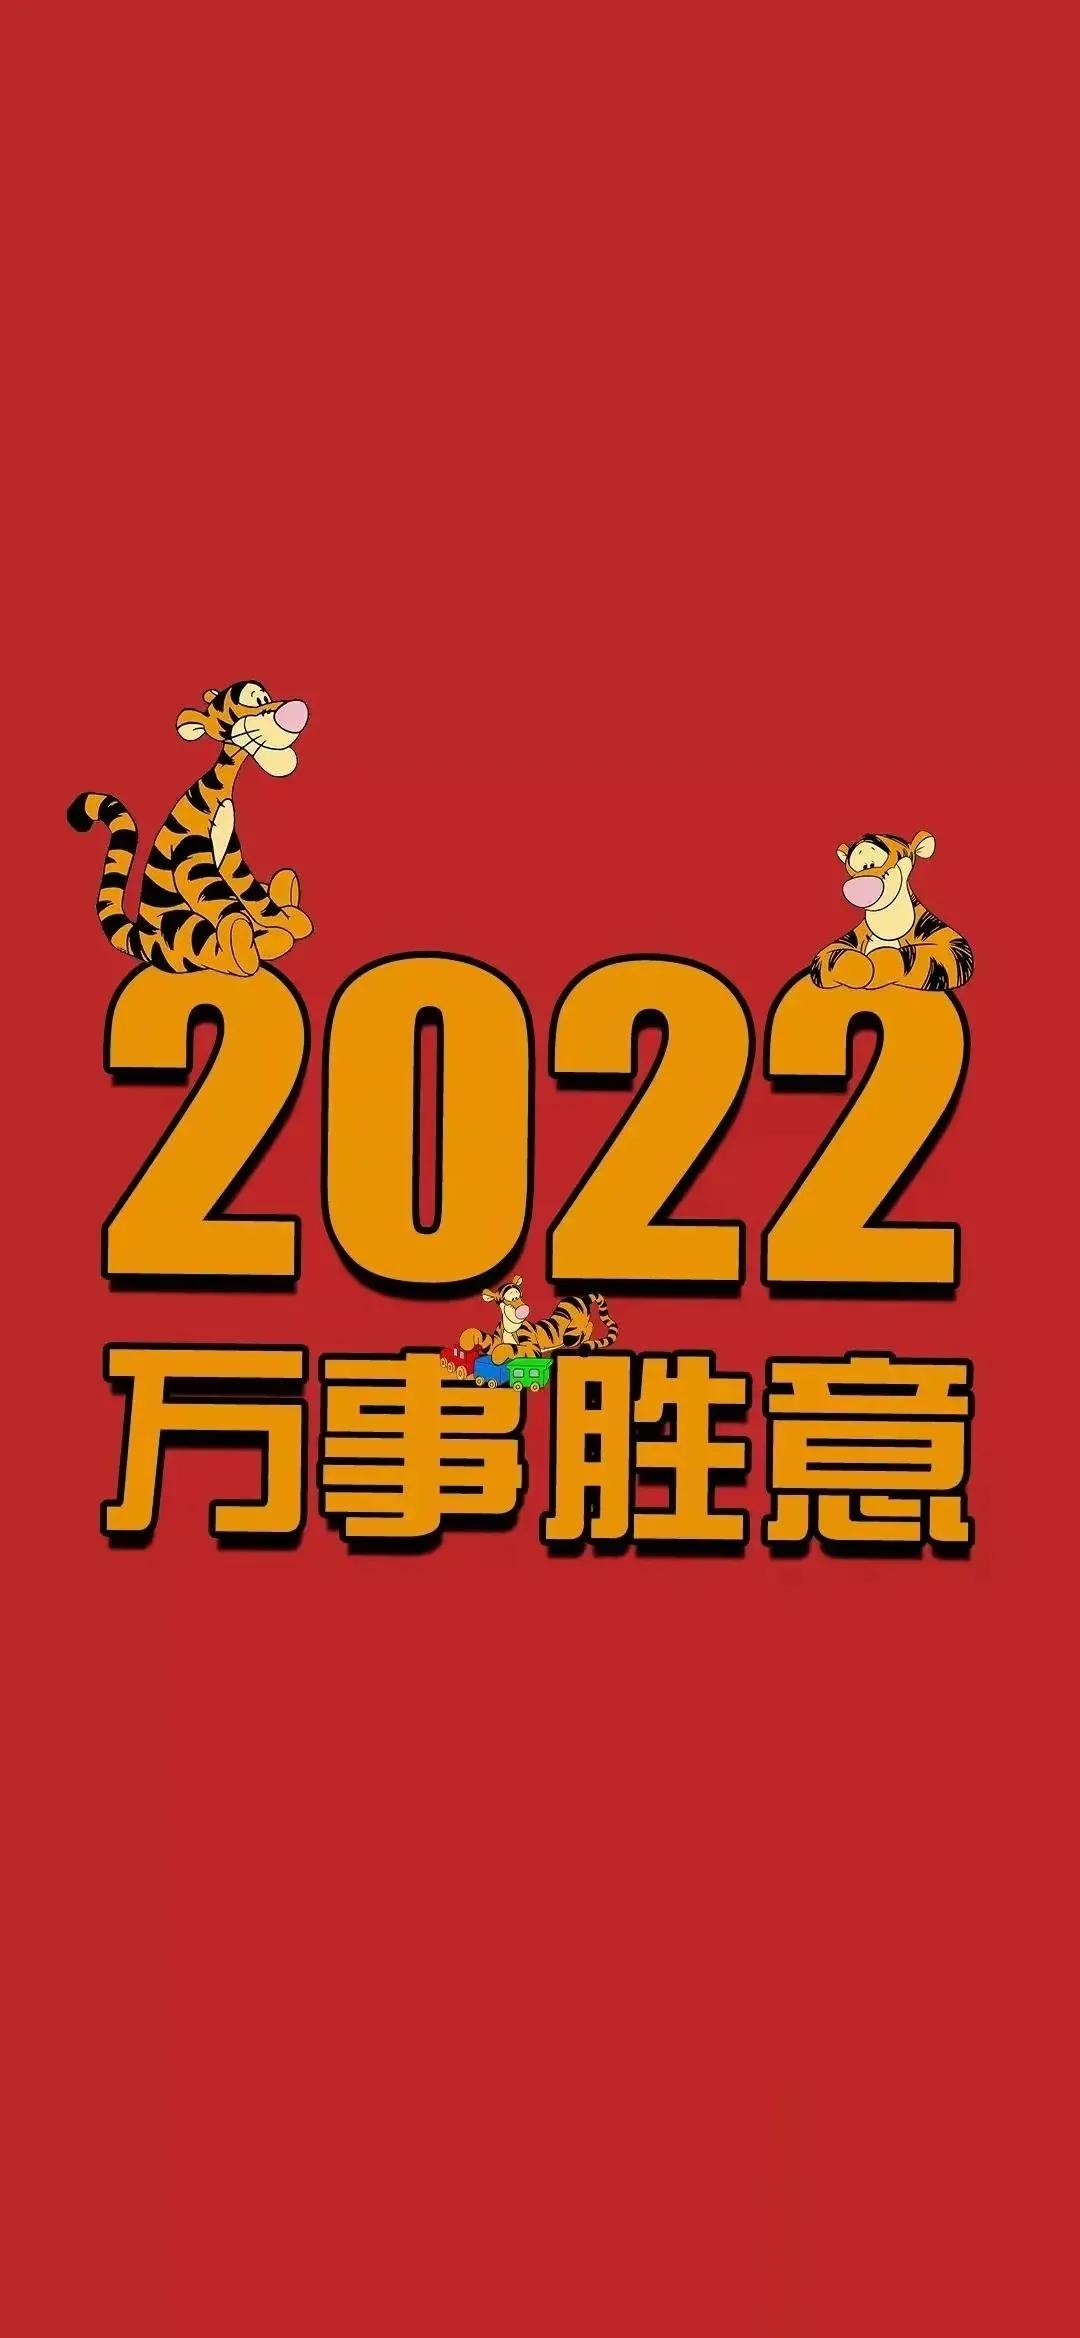 2022虎年除夕祝福图片新年贺岁超清吉祥壁纸红色喜庆好运背景